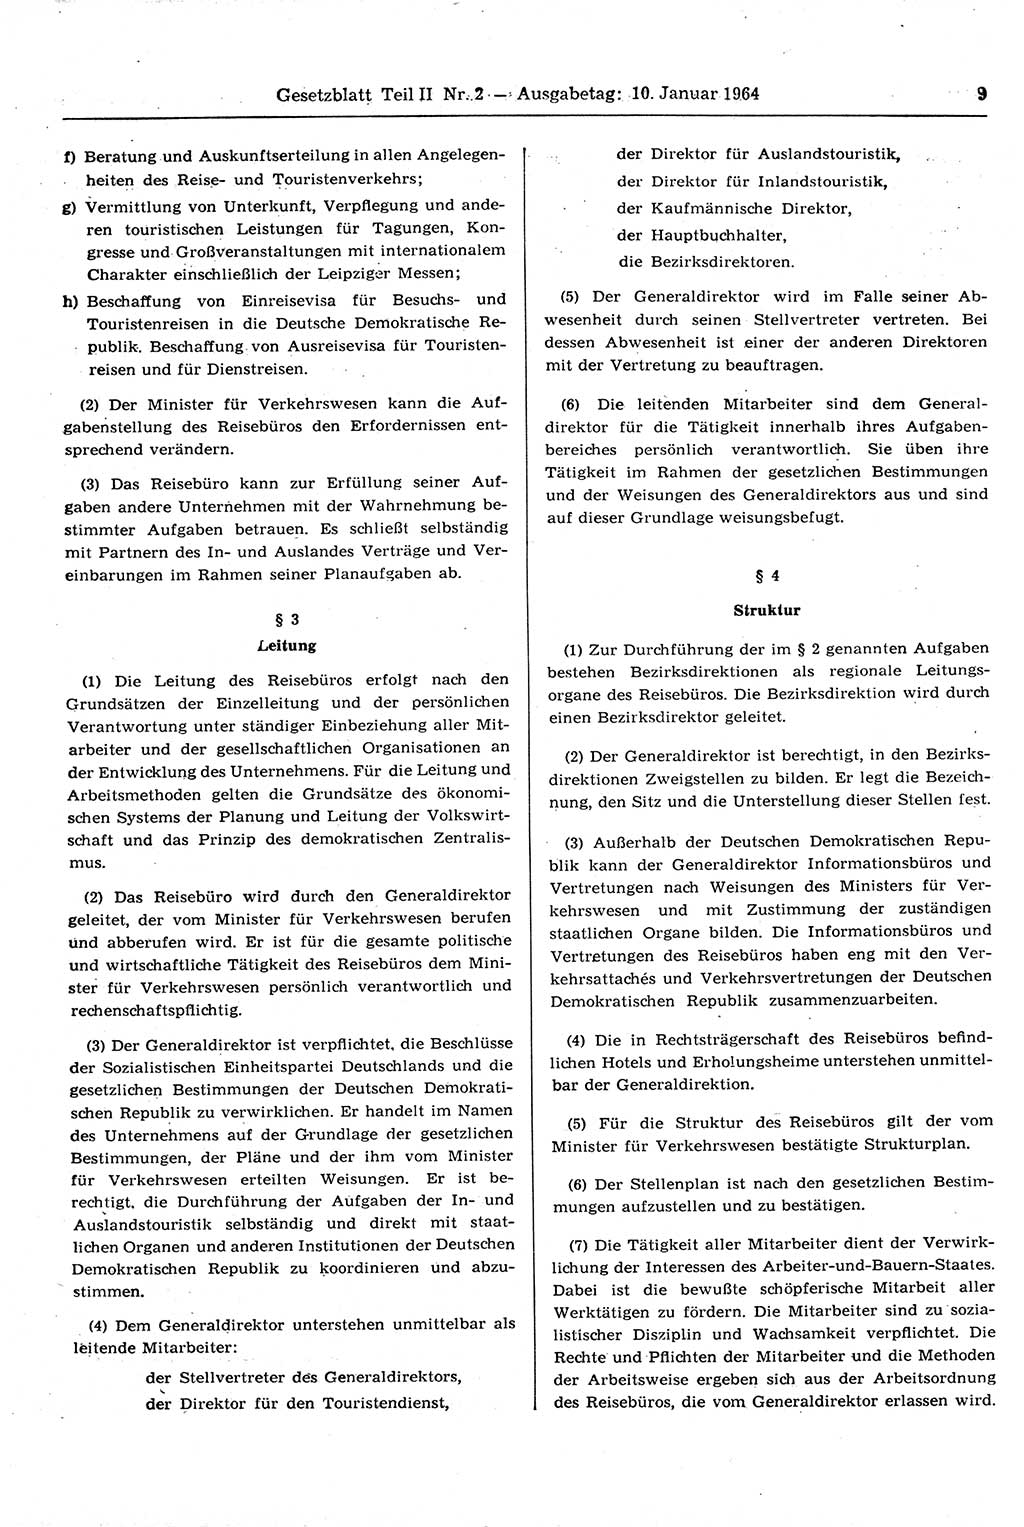 Gesetzblatt (GBl.) der Deutschen Demokratischen Republik (DDR) Teil ⅠⅠ 1964, Seite 9 (GBl. DDR ⅠⅠ 1964, S. 9)